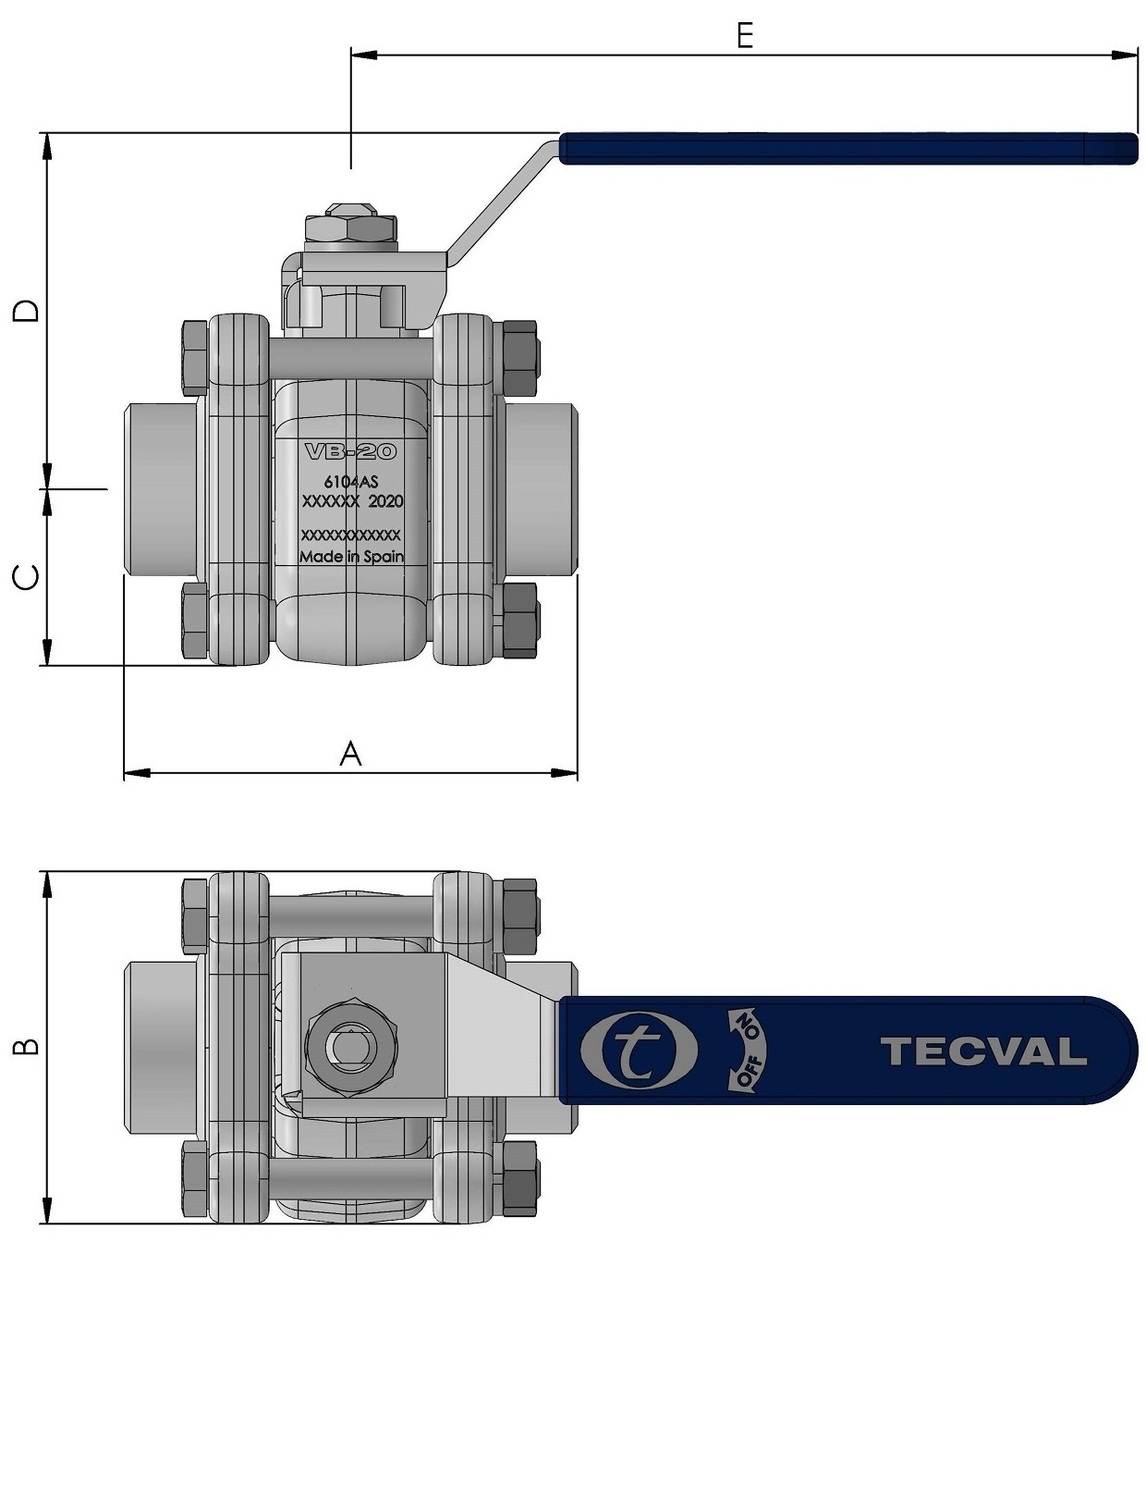 TECVAL cotes-vb20-5-